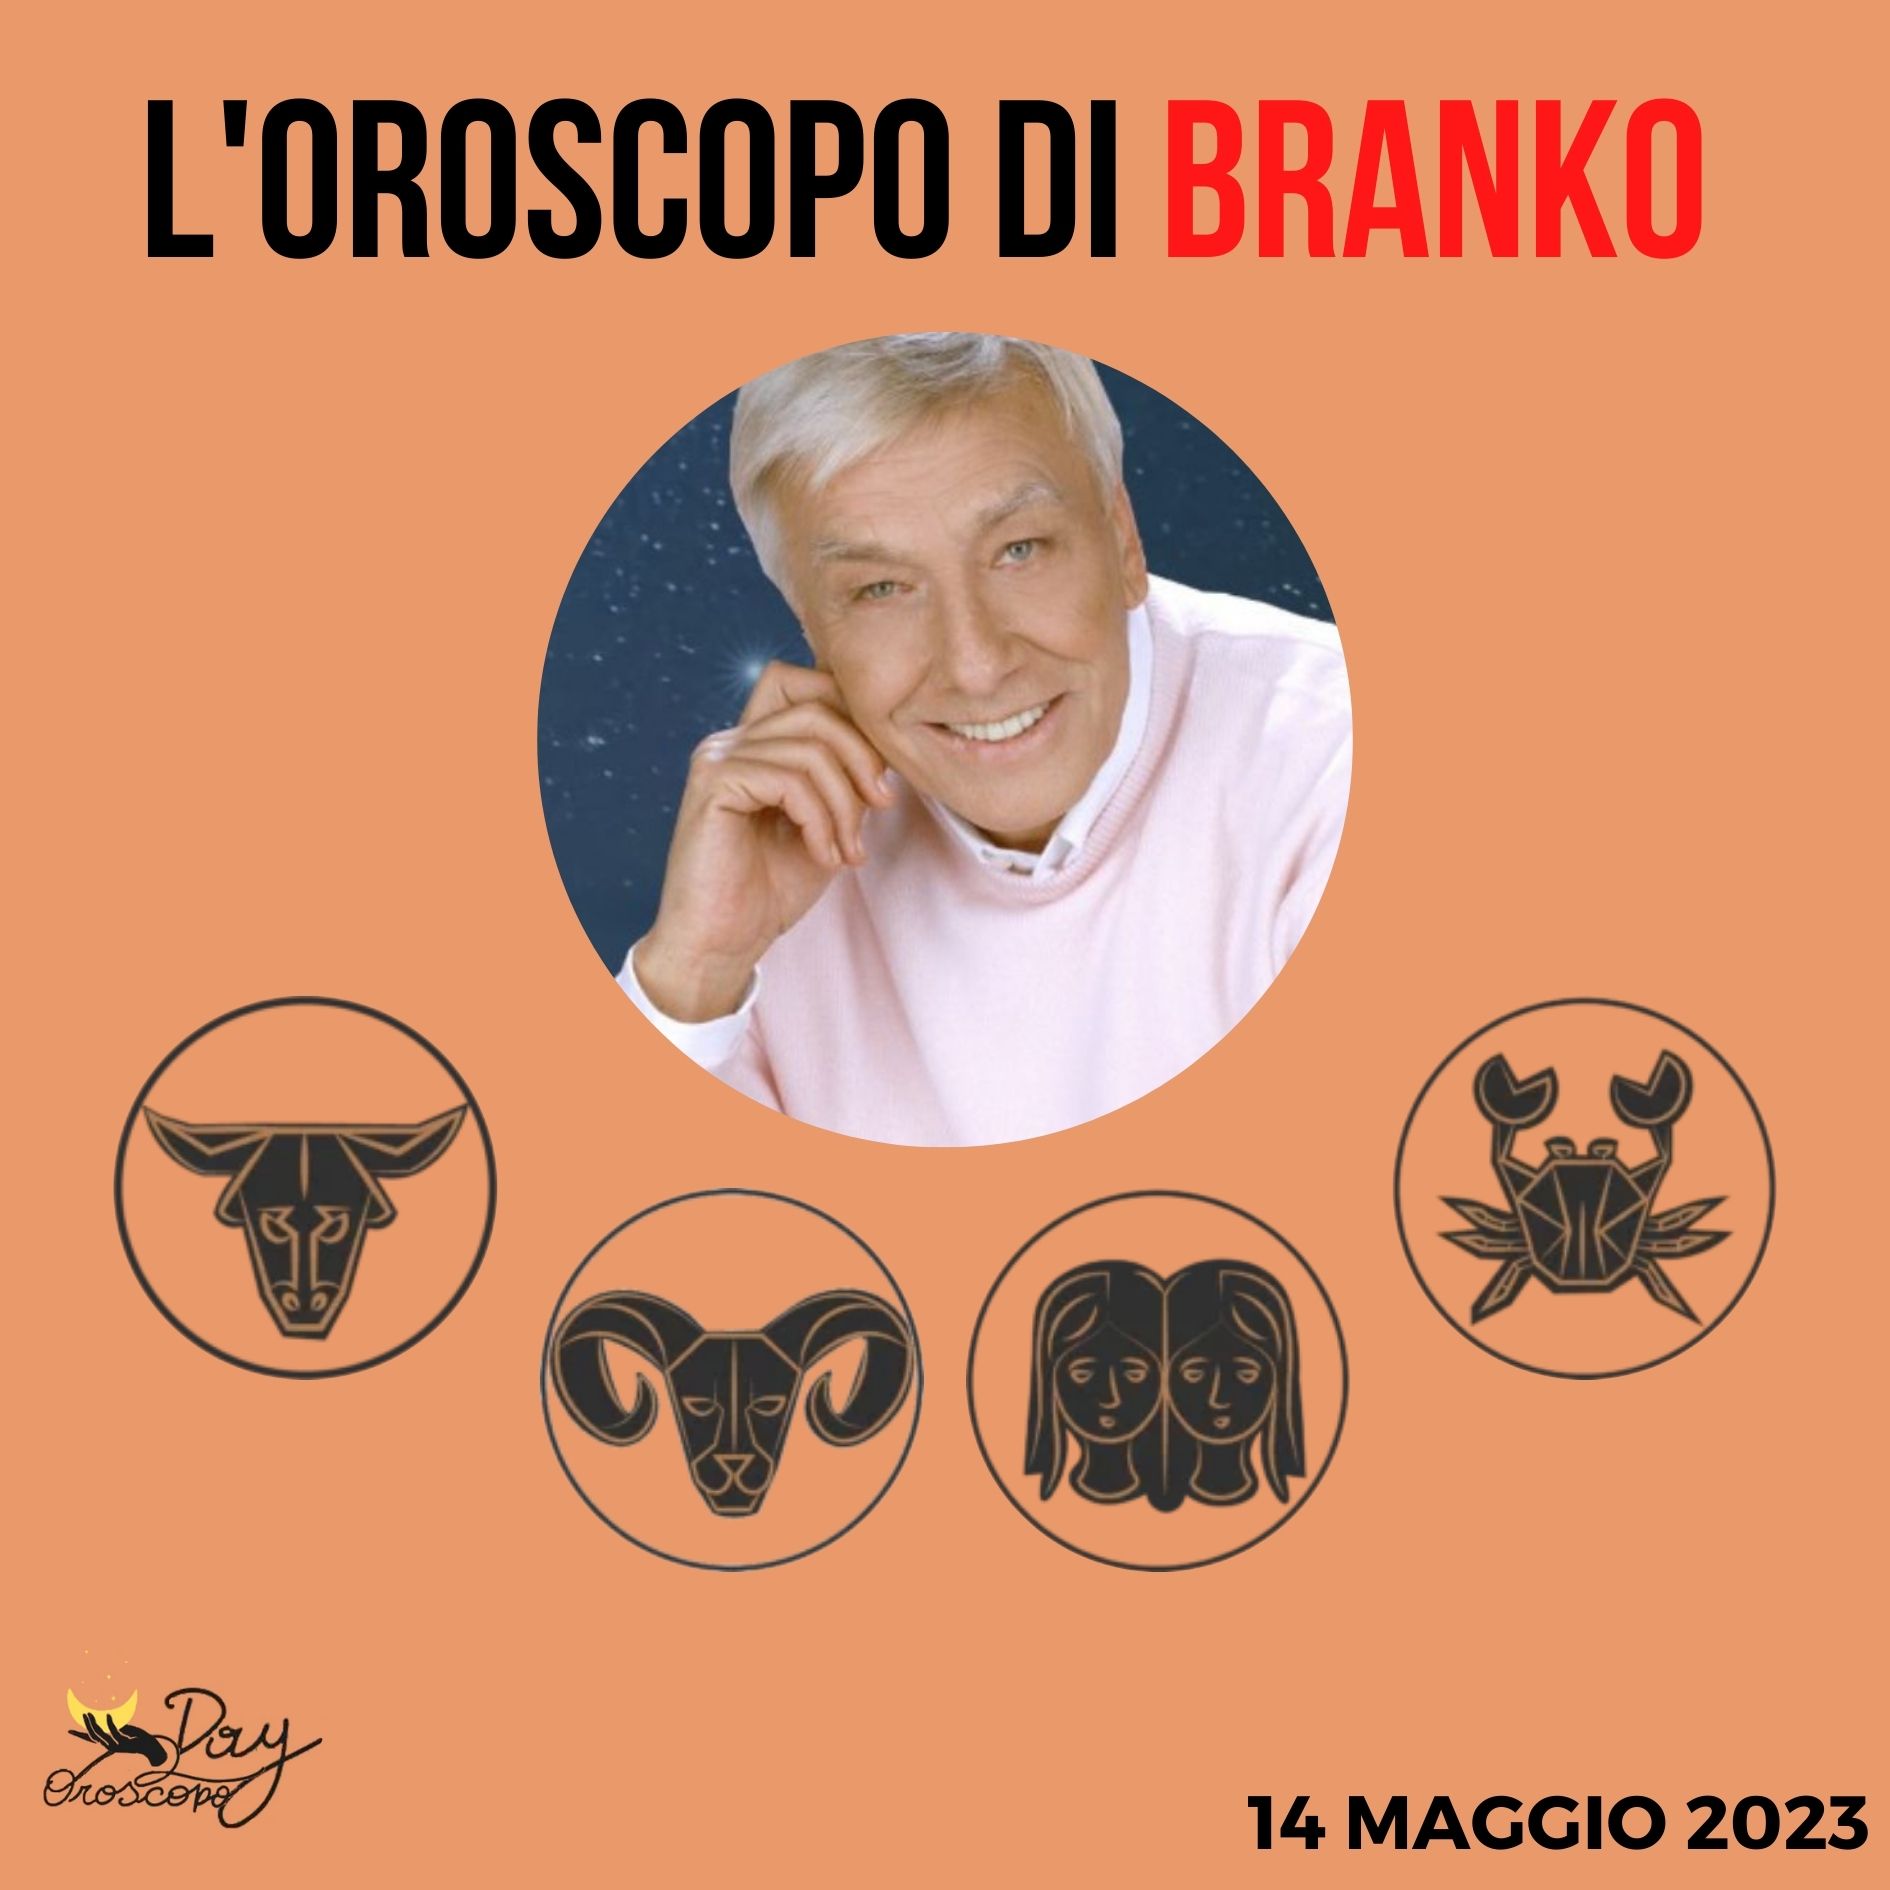 Oroscopo oggi domani Branko 14 maggio Toro Ariete Gemelli Cancro